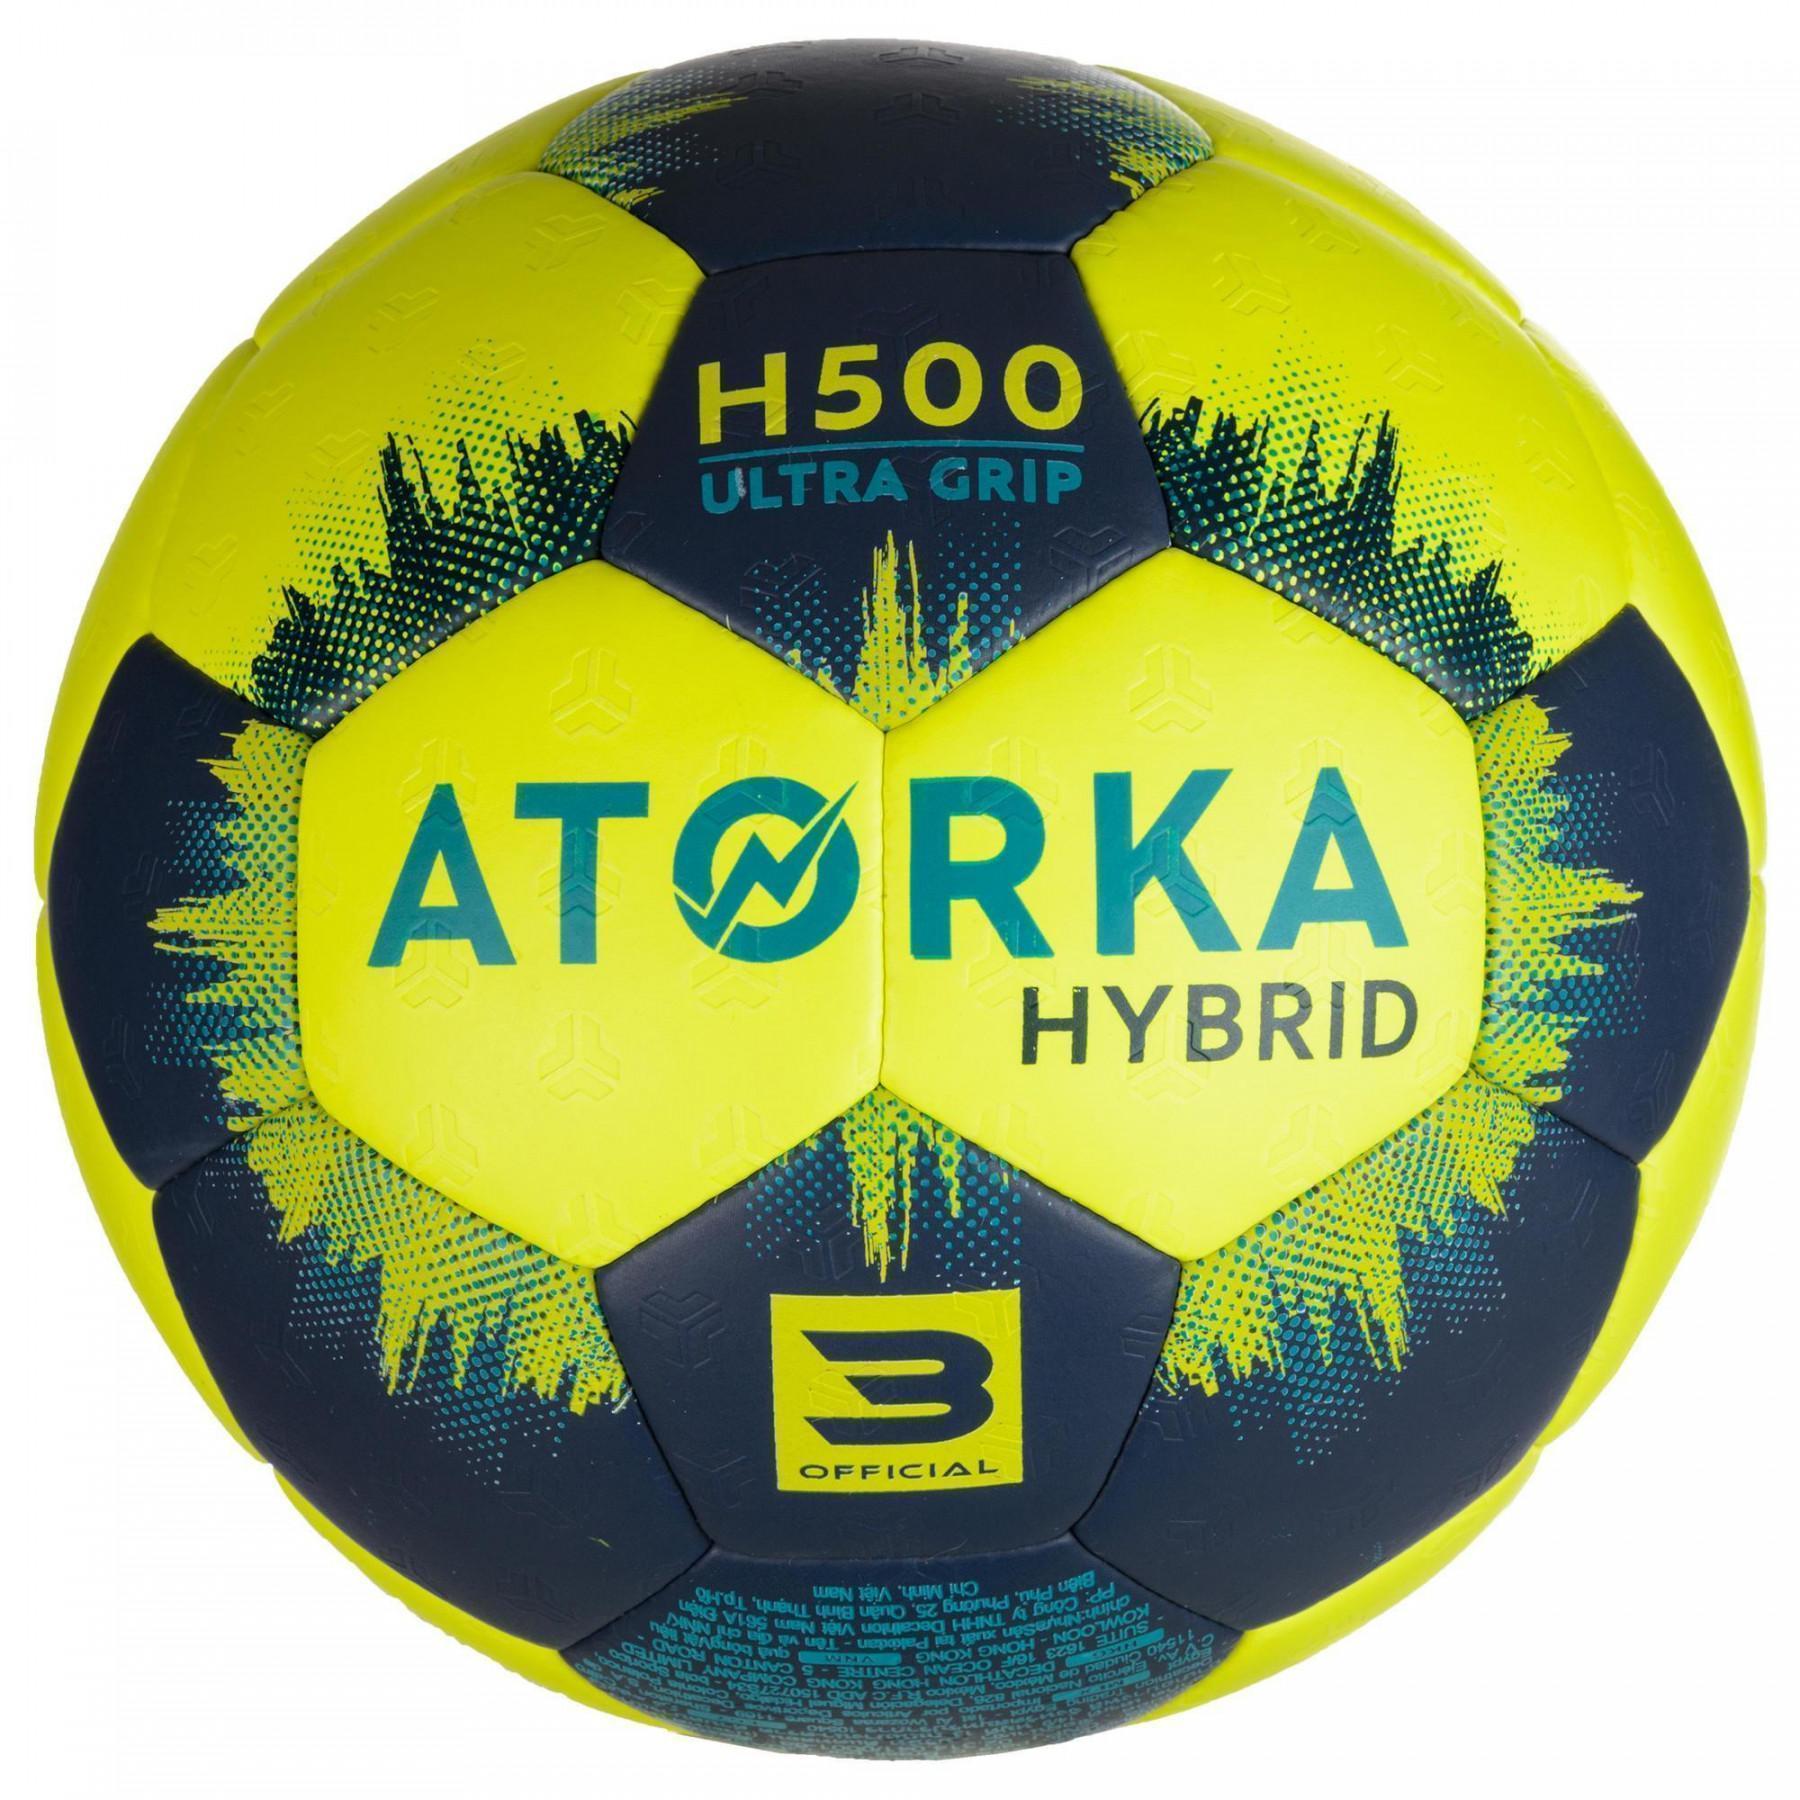 Balloon Atorka H500 - Taille 3